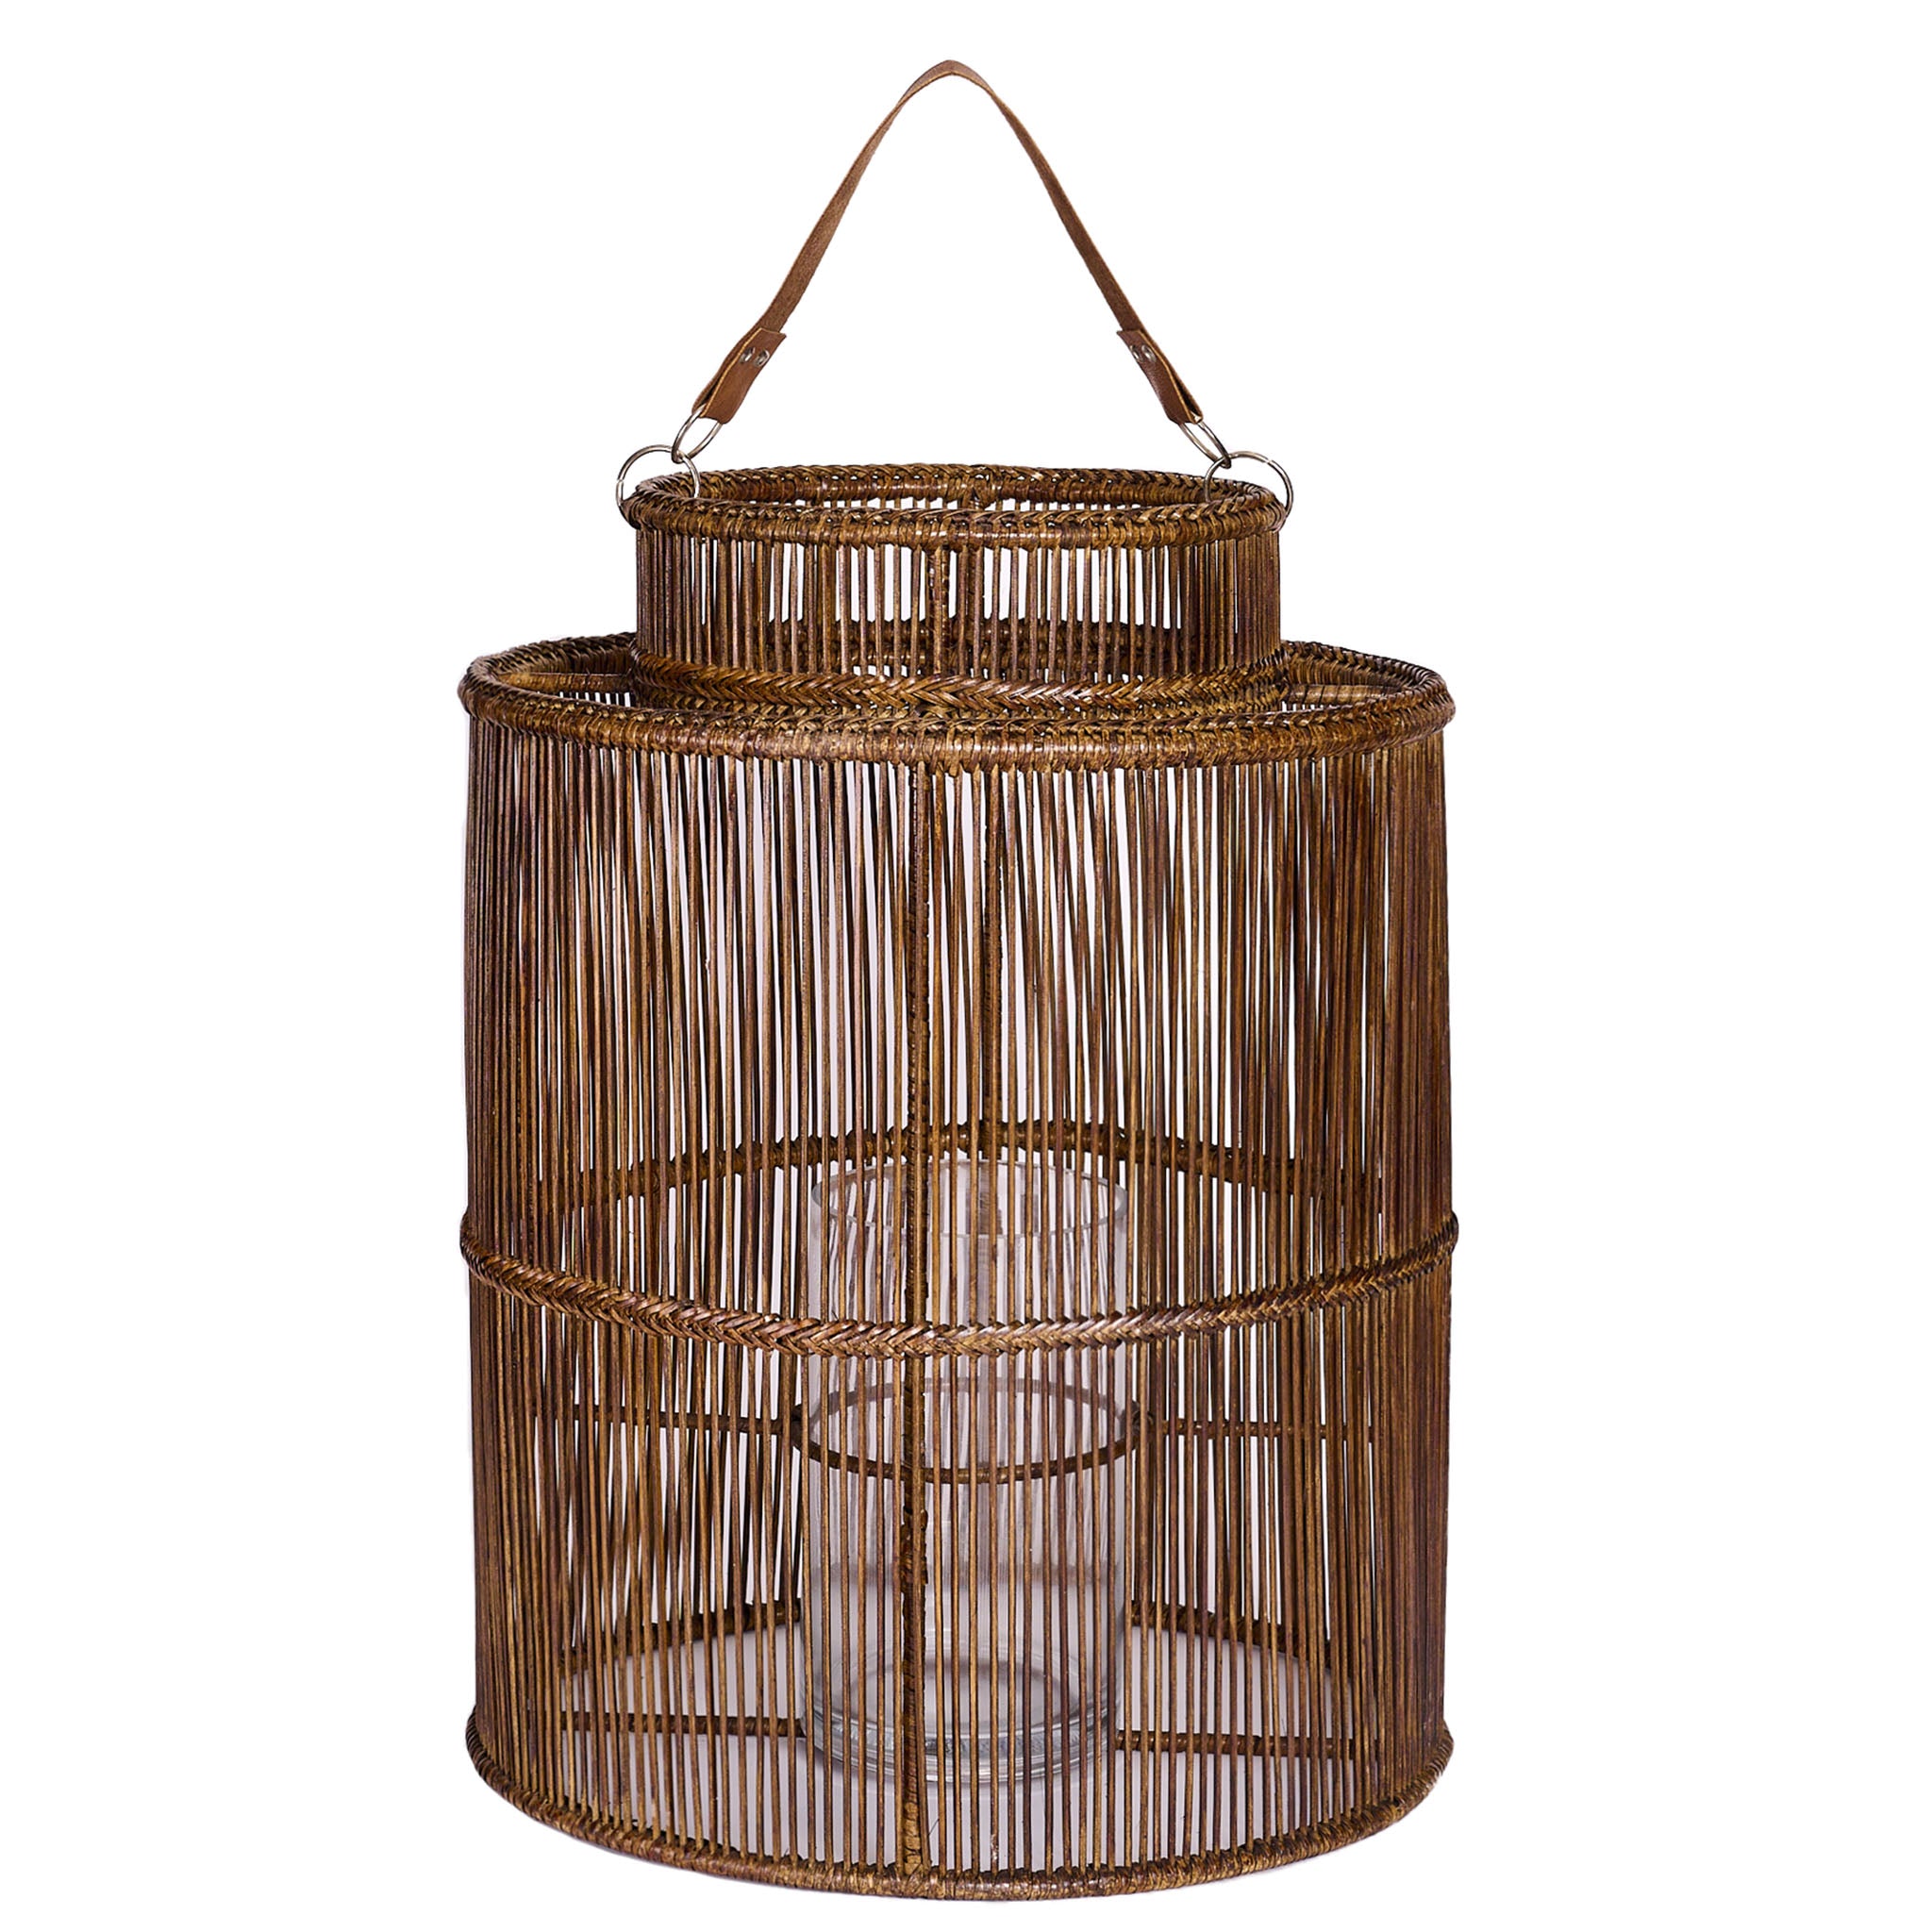 Big Lantern in rattan and bamboo